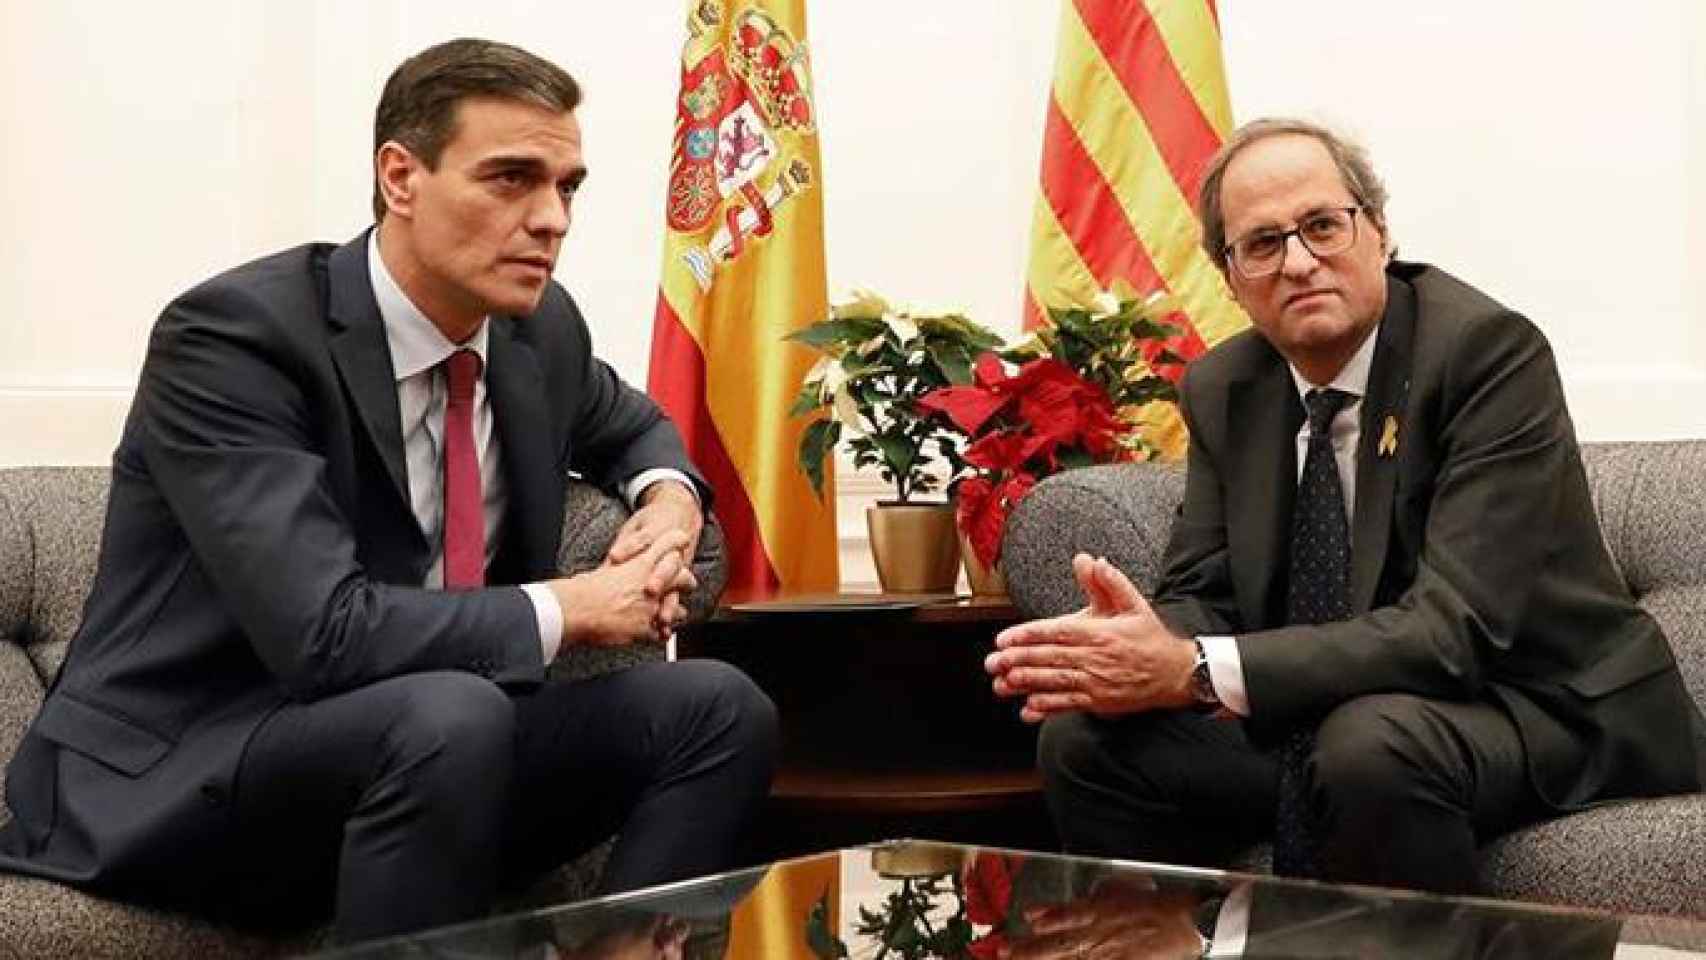 Pedro Sánchez y Quim Torra, en su reunión mantenida en el Palacio de Pedralbes, Barcelona, hace más de un año.